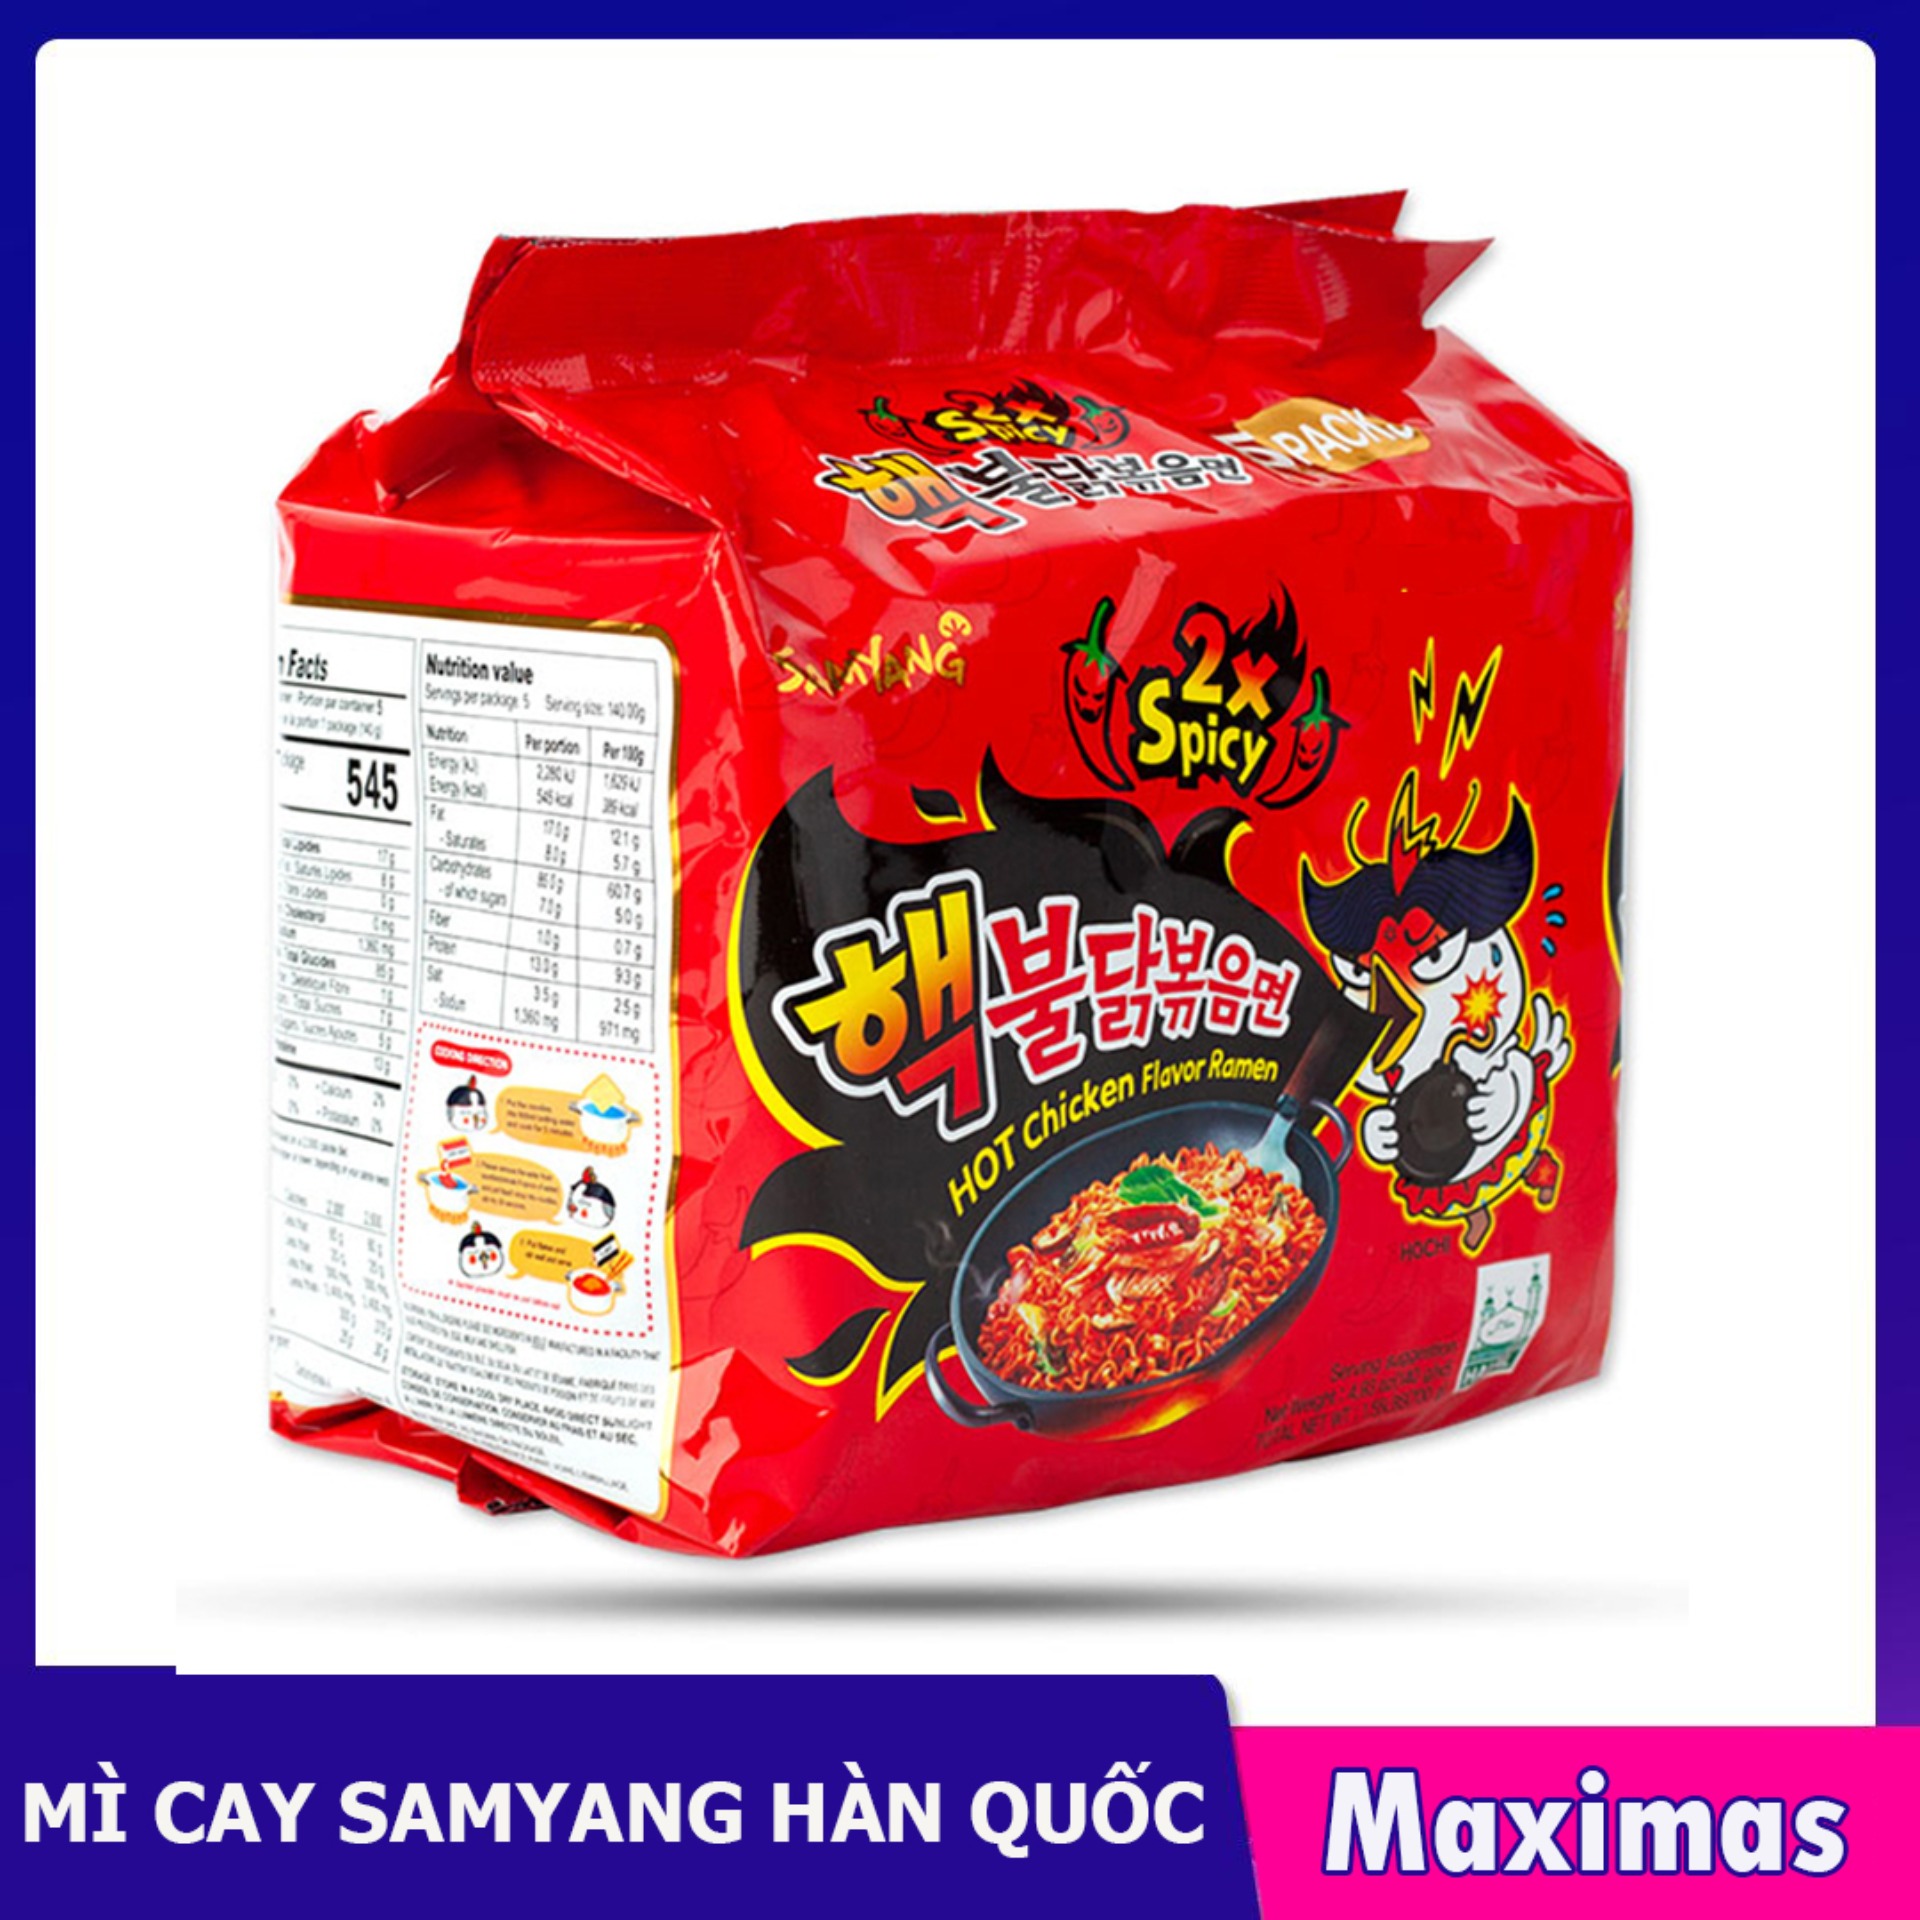 Combo 5 Mì Khô Gà Siêu Cay 2X Hot Chicken Flavor Ramen Sam Yang 140g